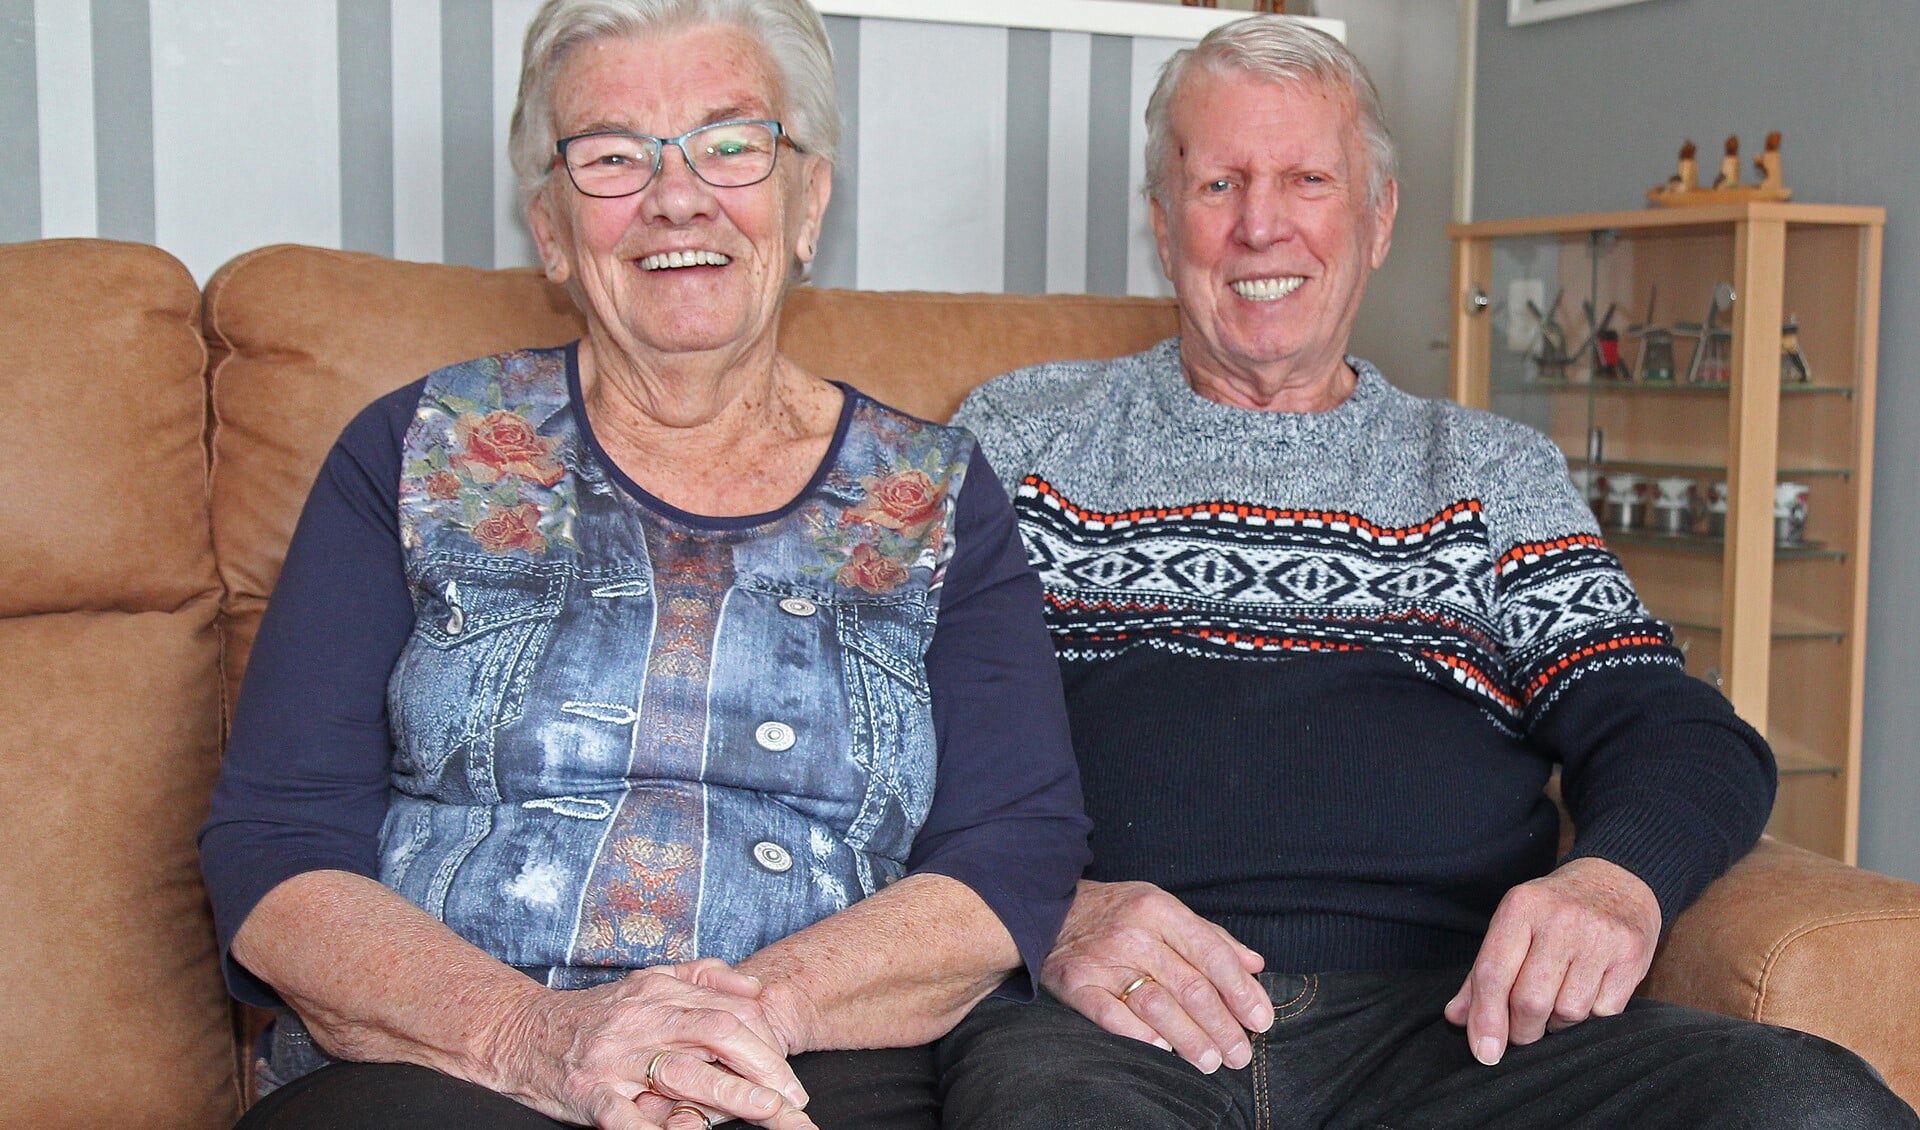 Lien Vosslamber is al 60 jaar met haar 'zeeman' Lukas getrouwd. 